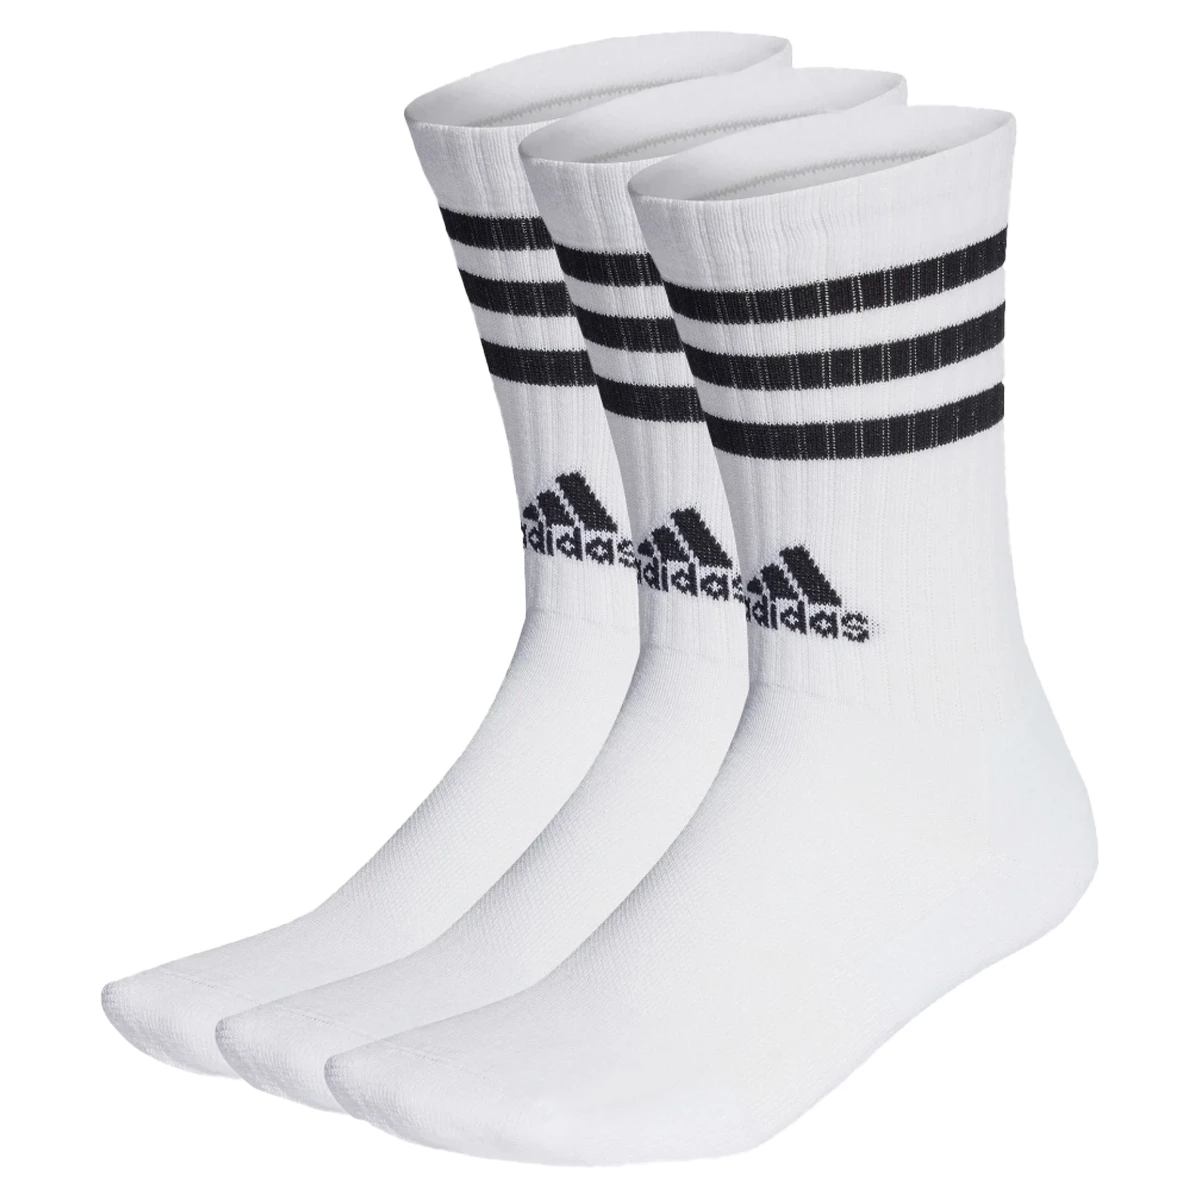 Afbeelding van Adidas 3-stripes gevoerde sokken 3 paar